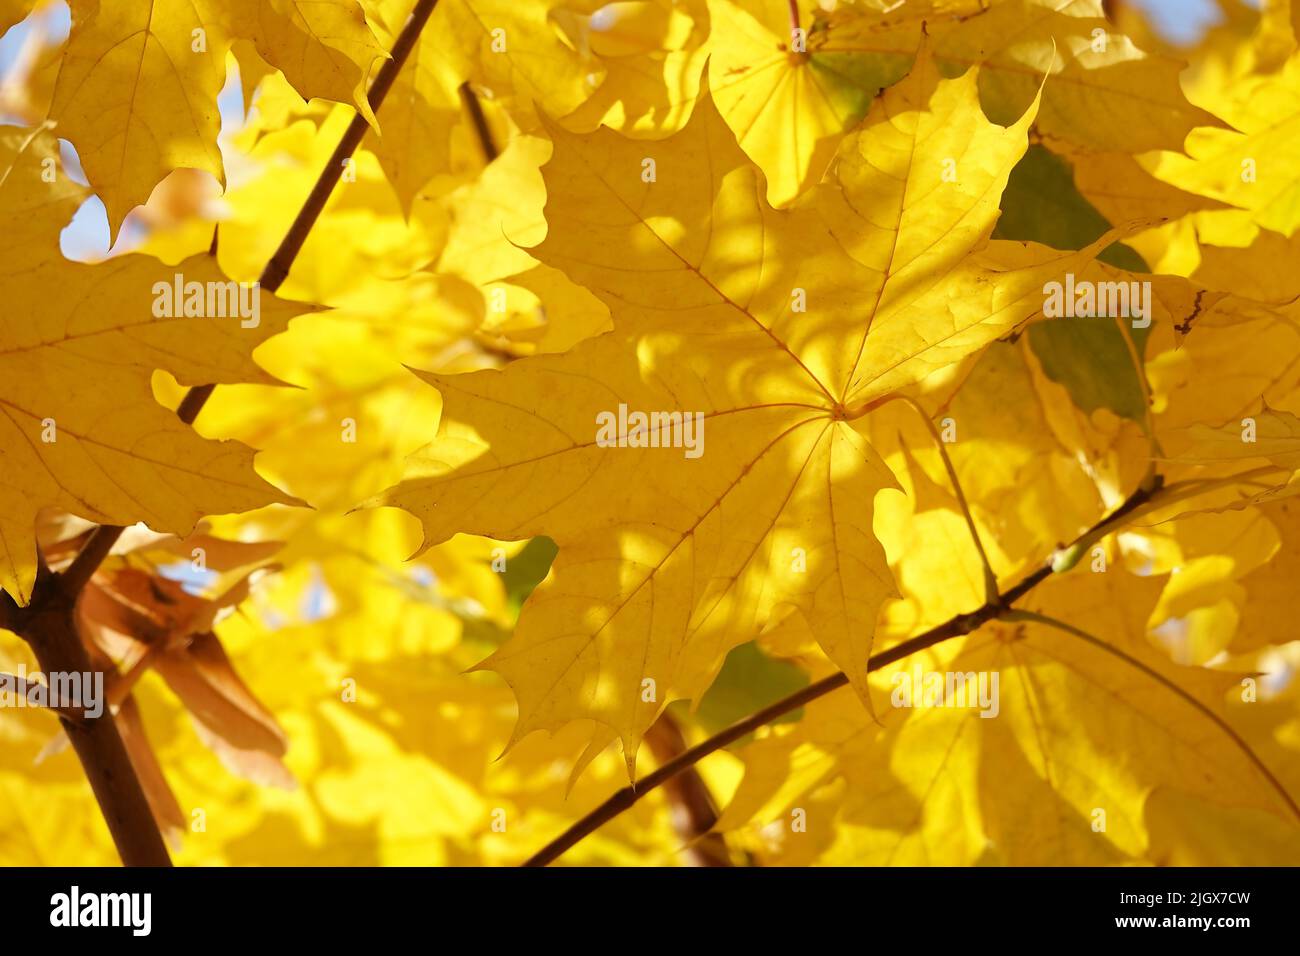 Feuille d'automne sur une branche d'arbre dans des rayons de soleil de lumière Banque D'Images